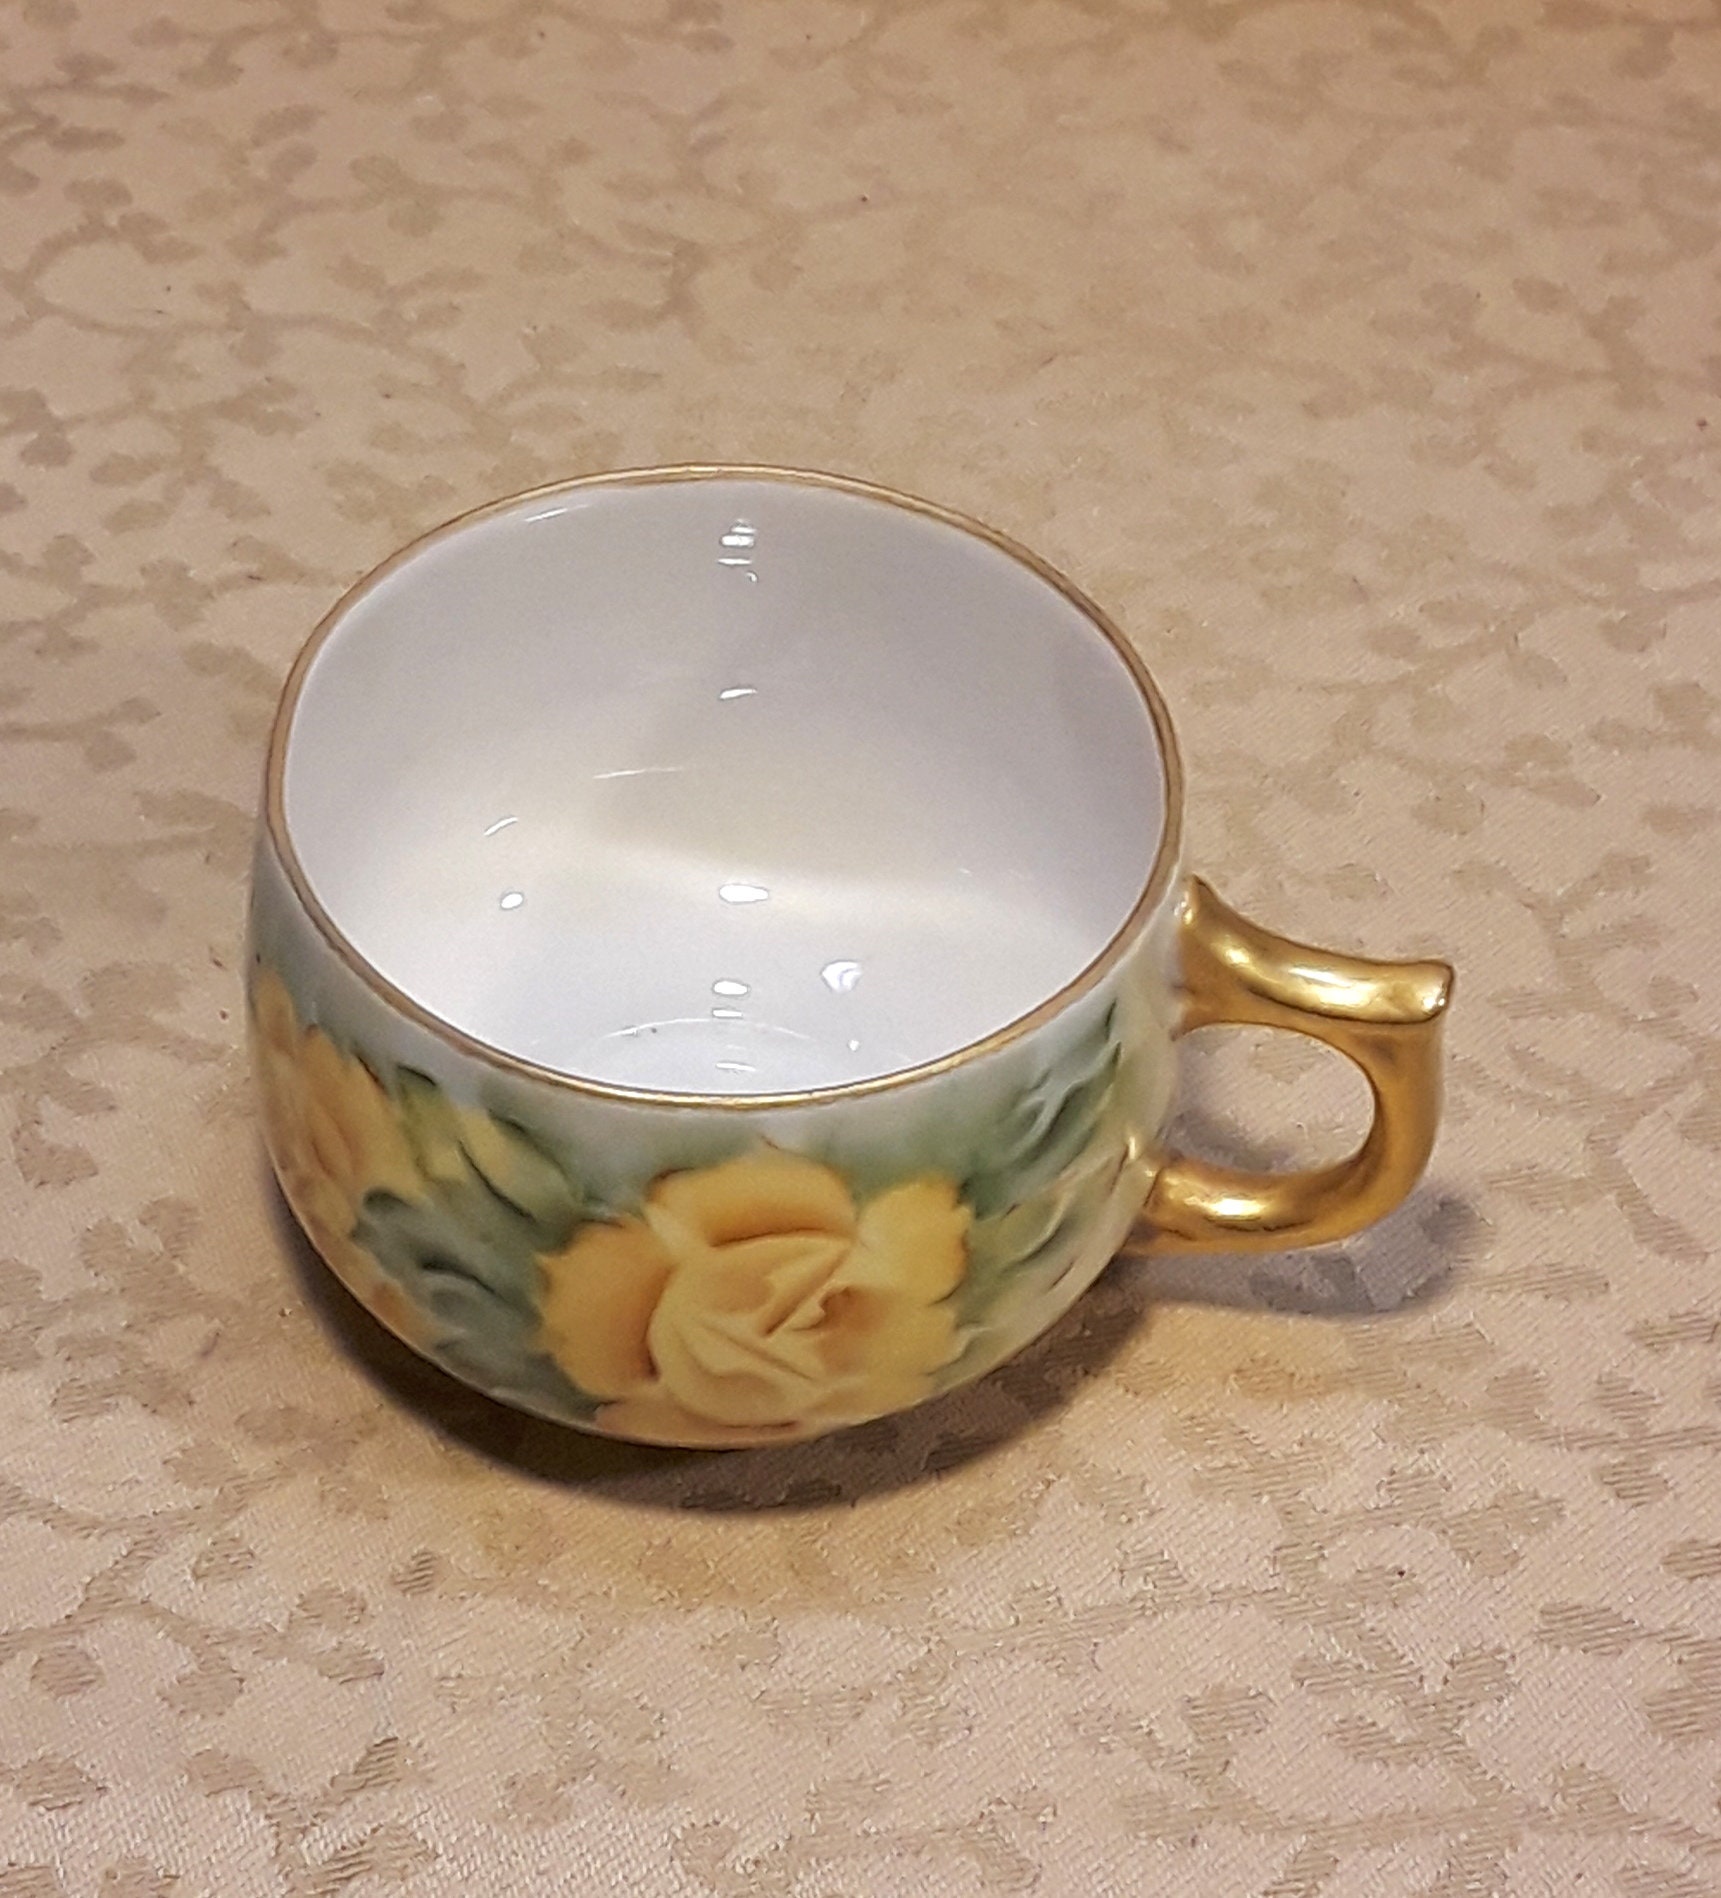 Tazza da colazione gufetti shabby - La Gardenia Decorazioni Artistiche -  Porcellana e Ceramica dipinte a mano